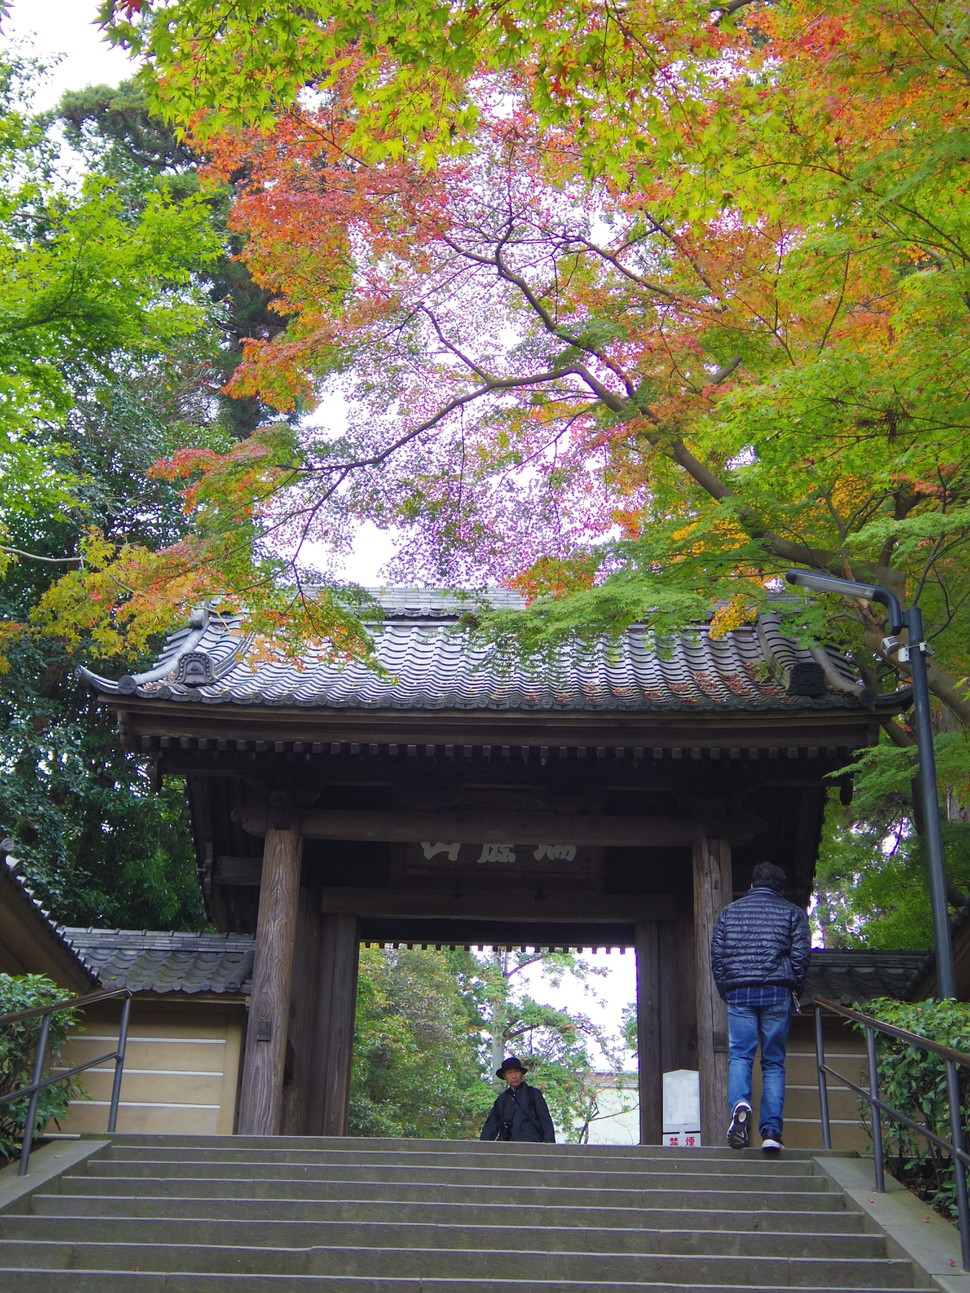 鎌倉さんぽ 秋の絶景は鎌倉にアリ 格式あるお寺 円覚寺 は紅葉の名所だった Playlife プレイライフ